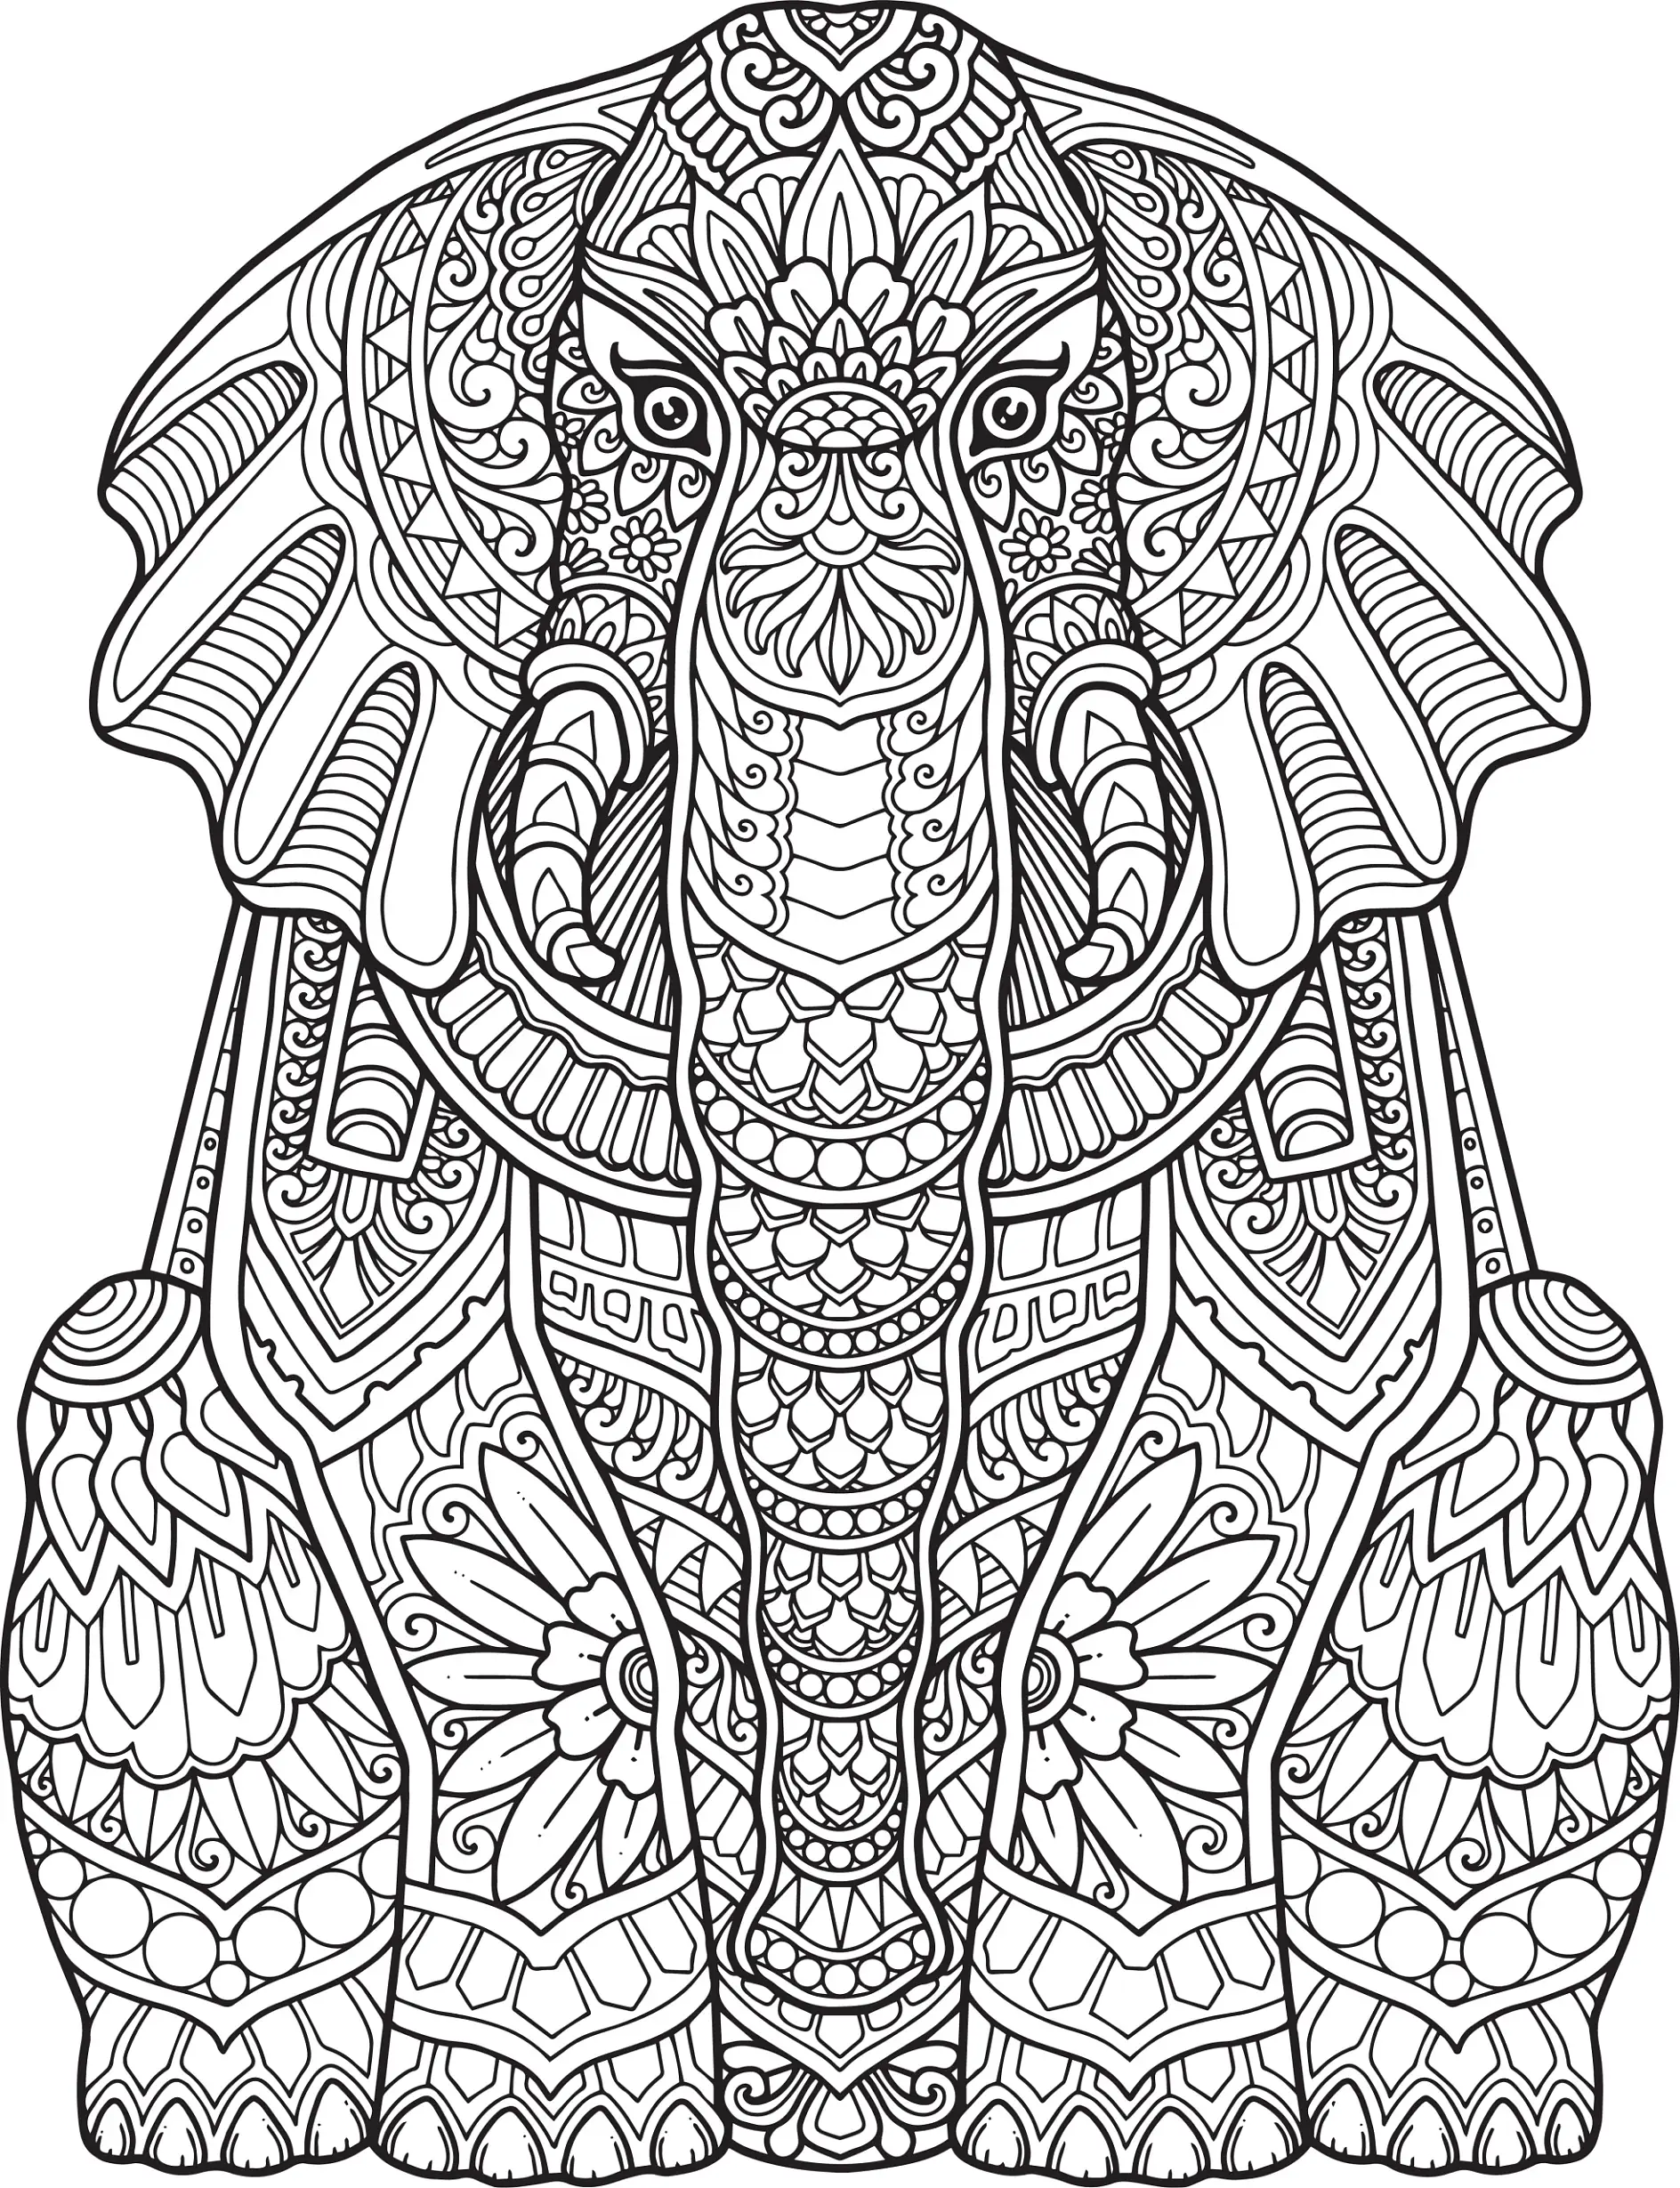 Ausmalbild Mandala Elefant mit detaillierten Ornamenten und Verzierungen